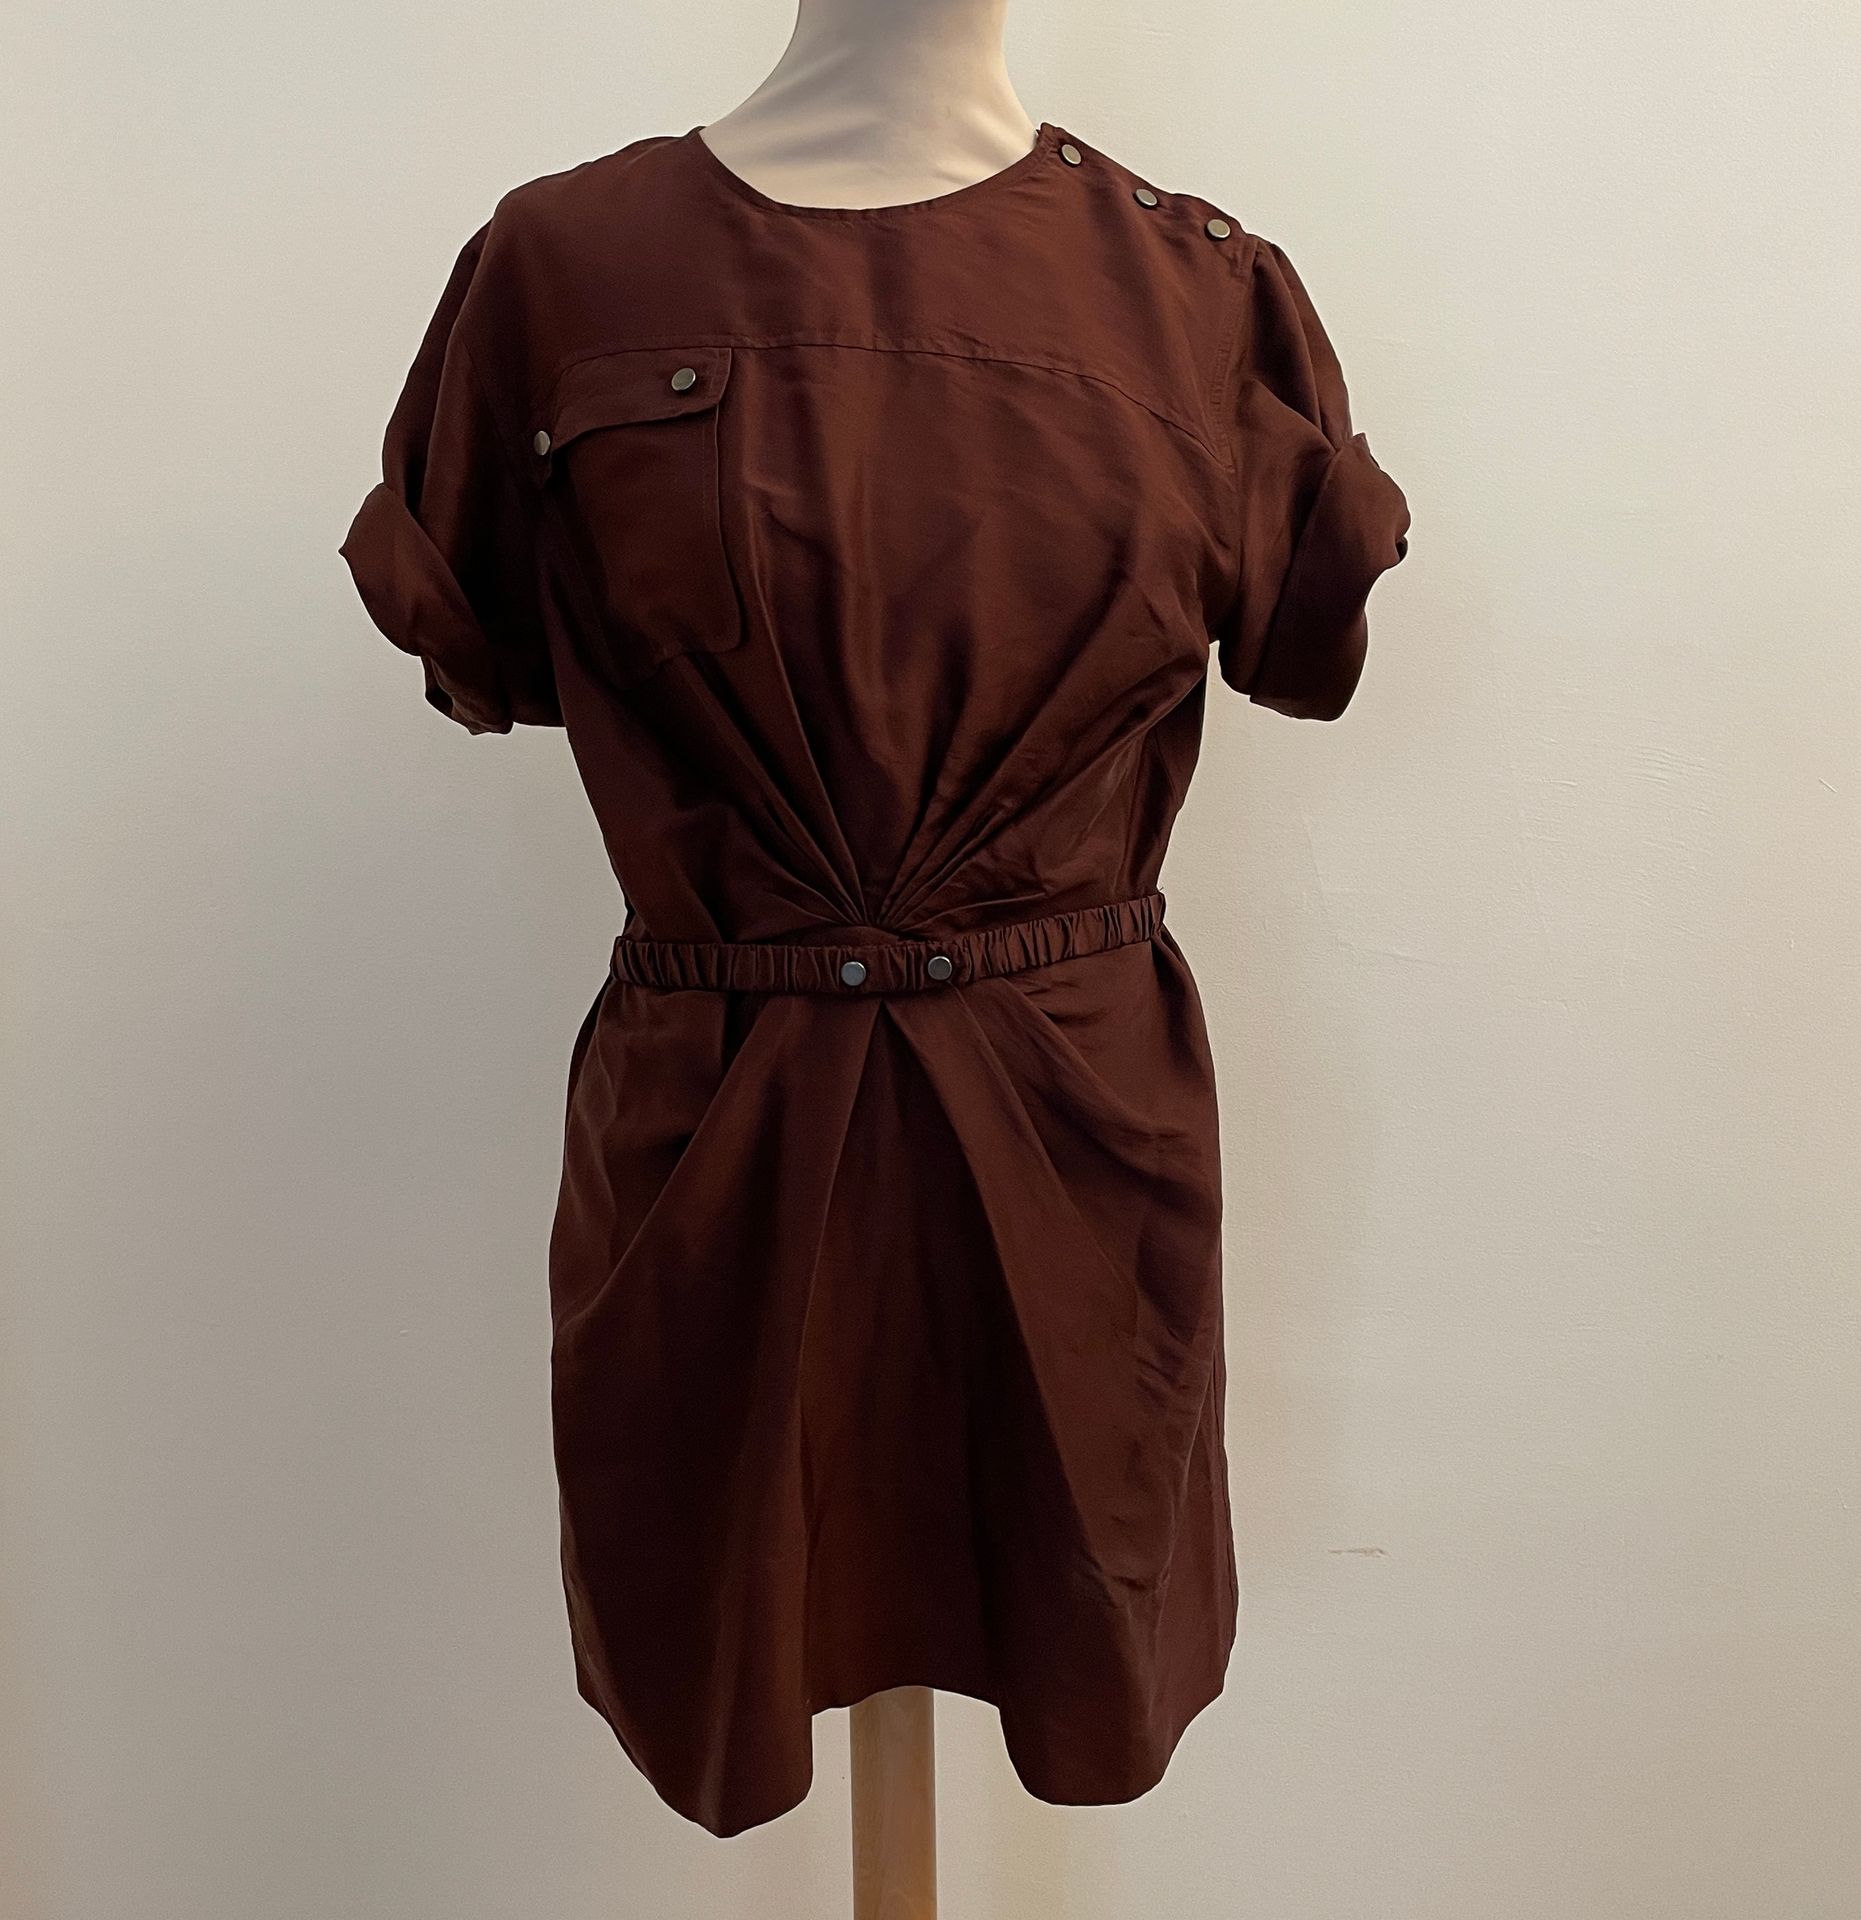 Null 丽莎贝尔-马兰特 (ISABEL MARANT)

酒红色丝绸短袖连衣裙。

尺寸38，肩宽40，腰宽35厘米，从领口到底部的高度75厘米